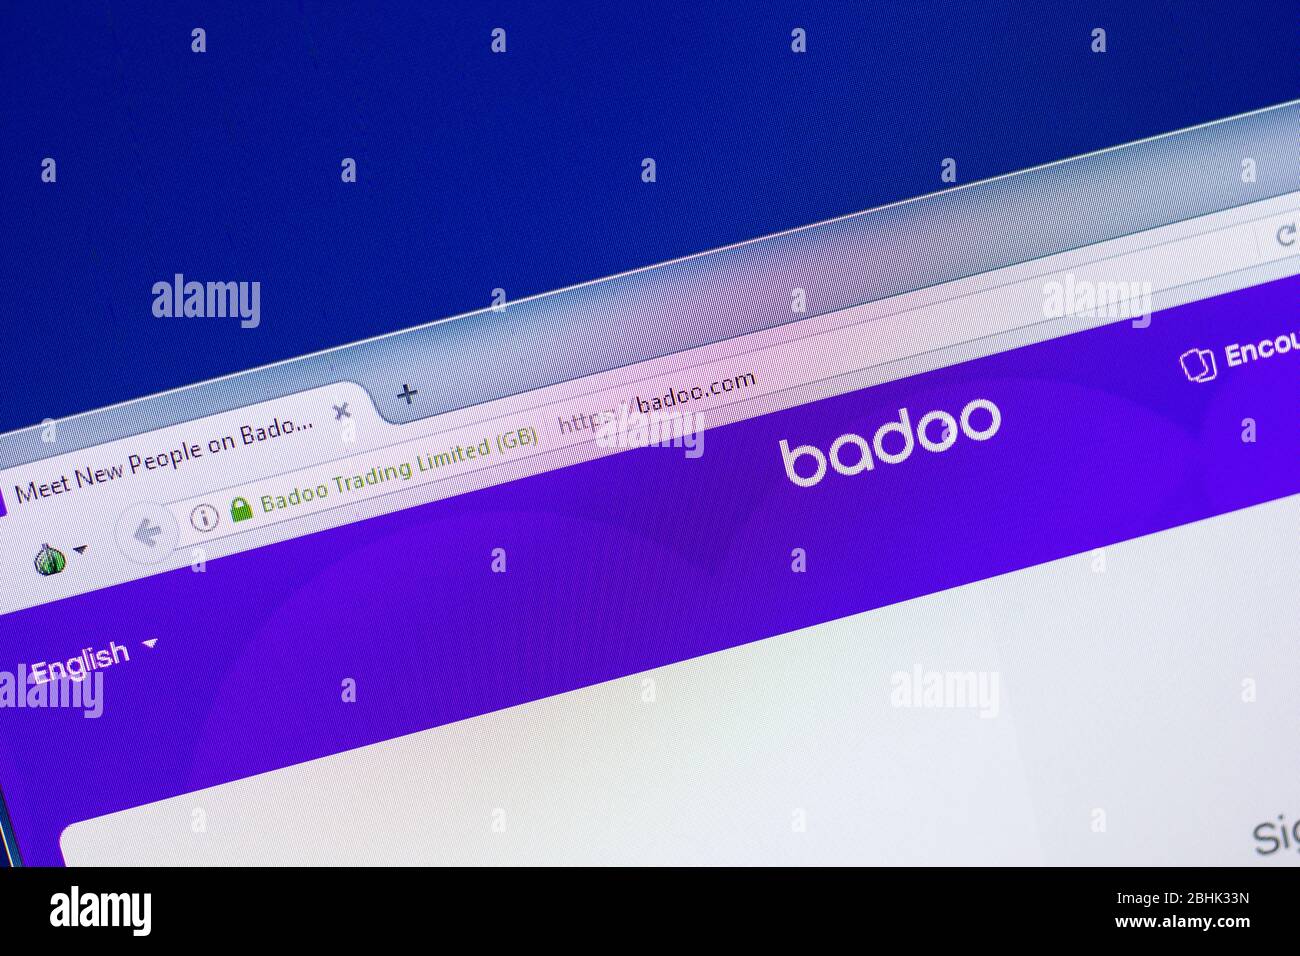 How to use badoo 2018